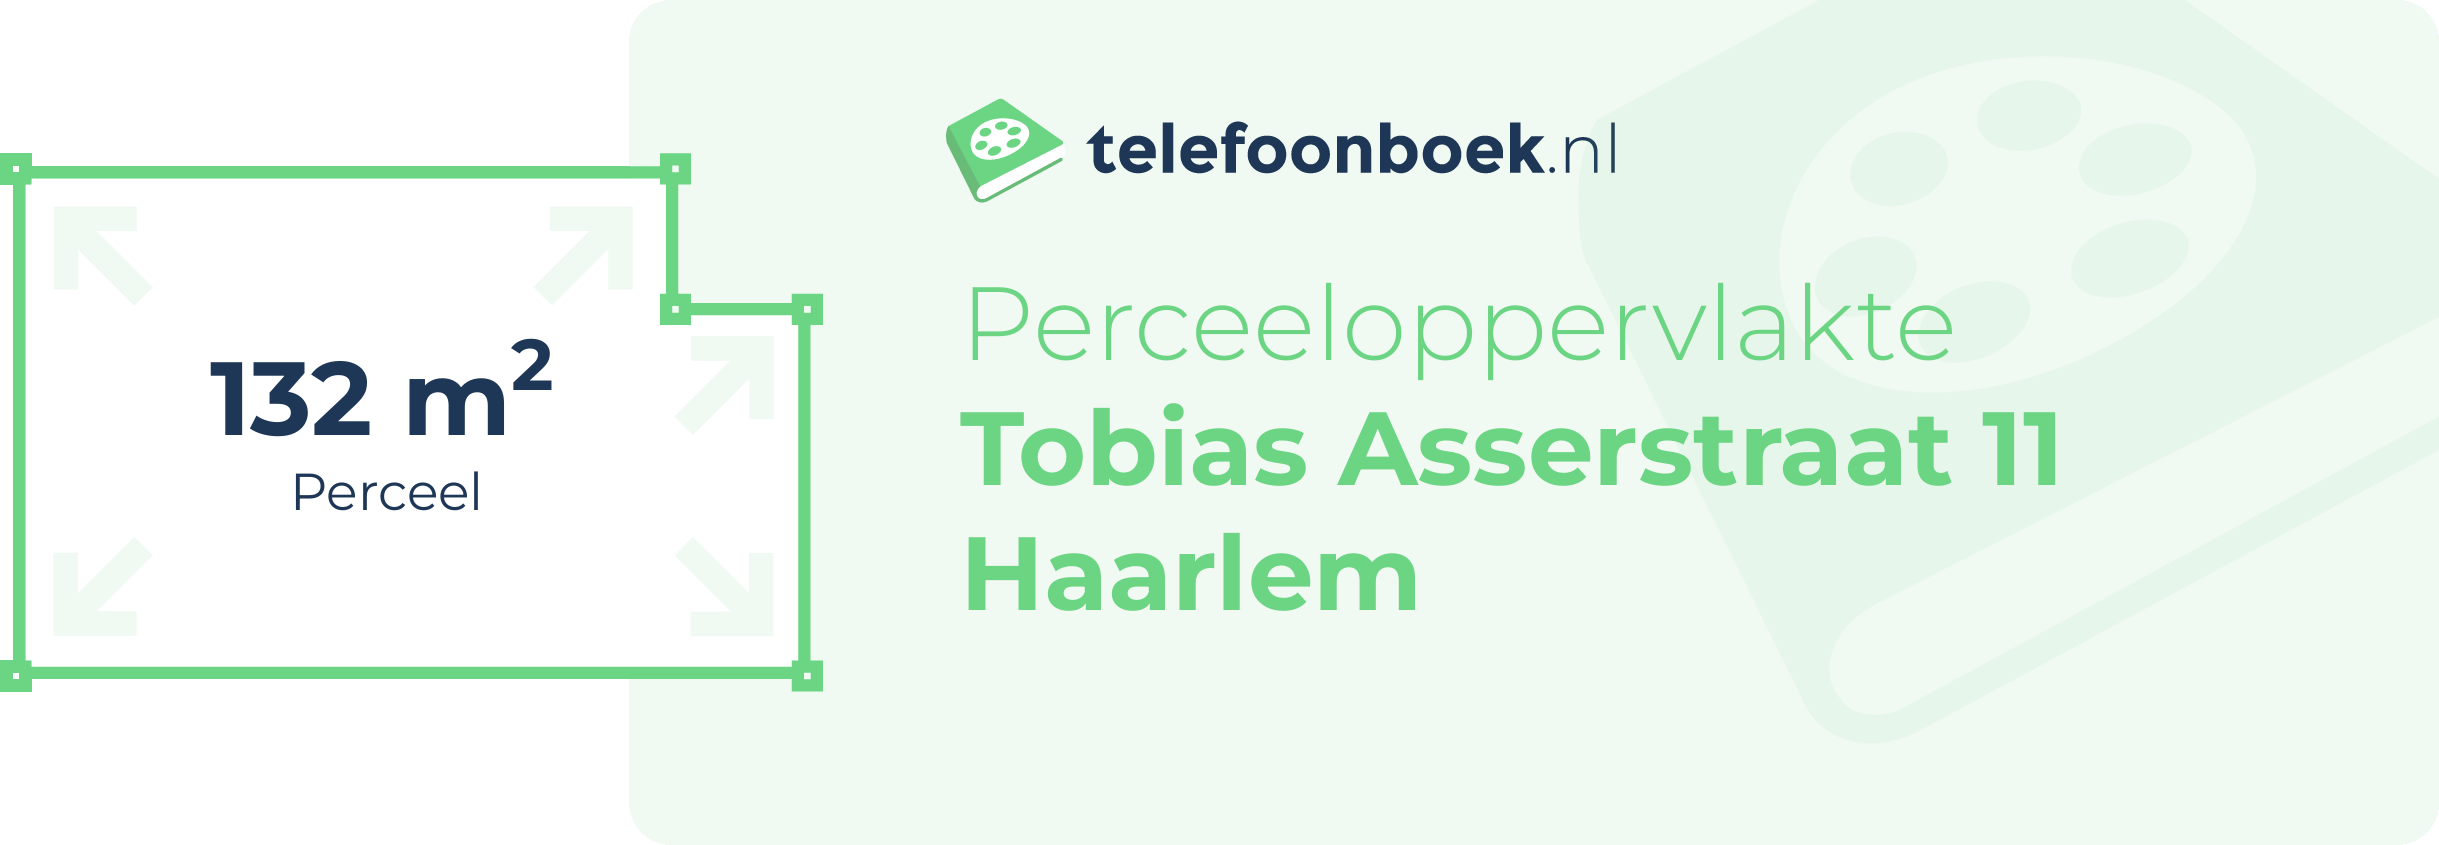 Perceeloppervlakte Tobias Asserstraat 11 Haarlem